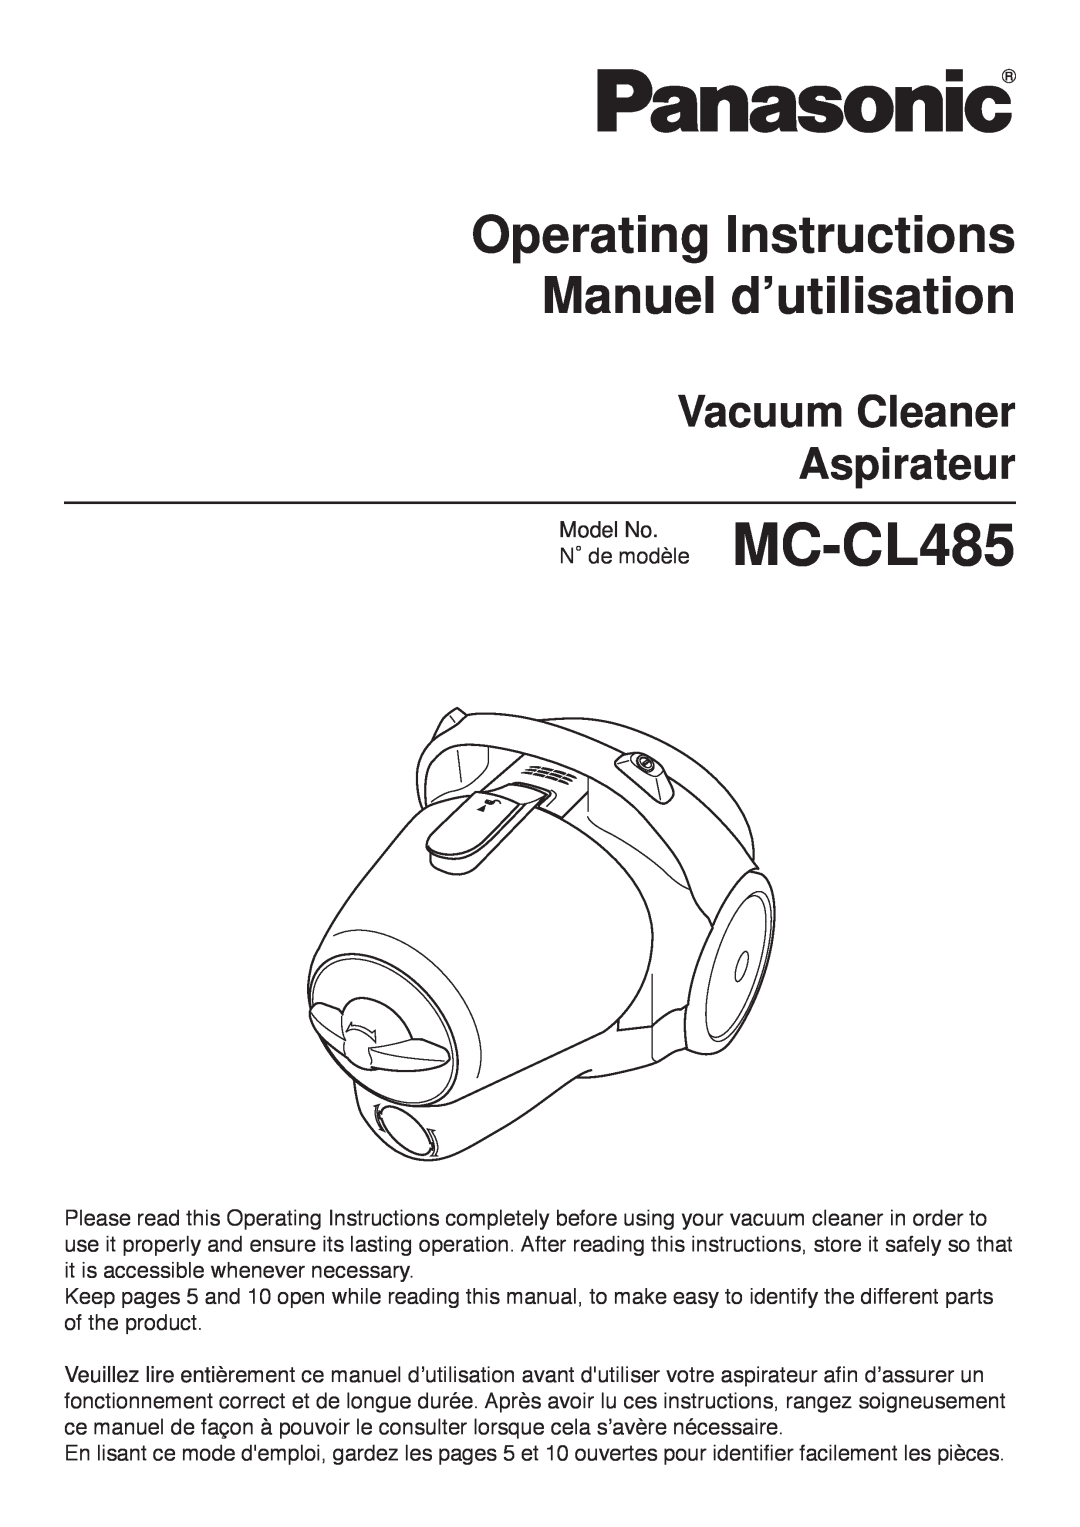 Panasonic Mccl485 manuel dutilisation MC-CL485, Operating Instructions Manuel d’utilisation, Vacuum Cleaner Aspirateur 